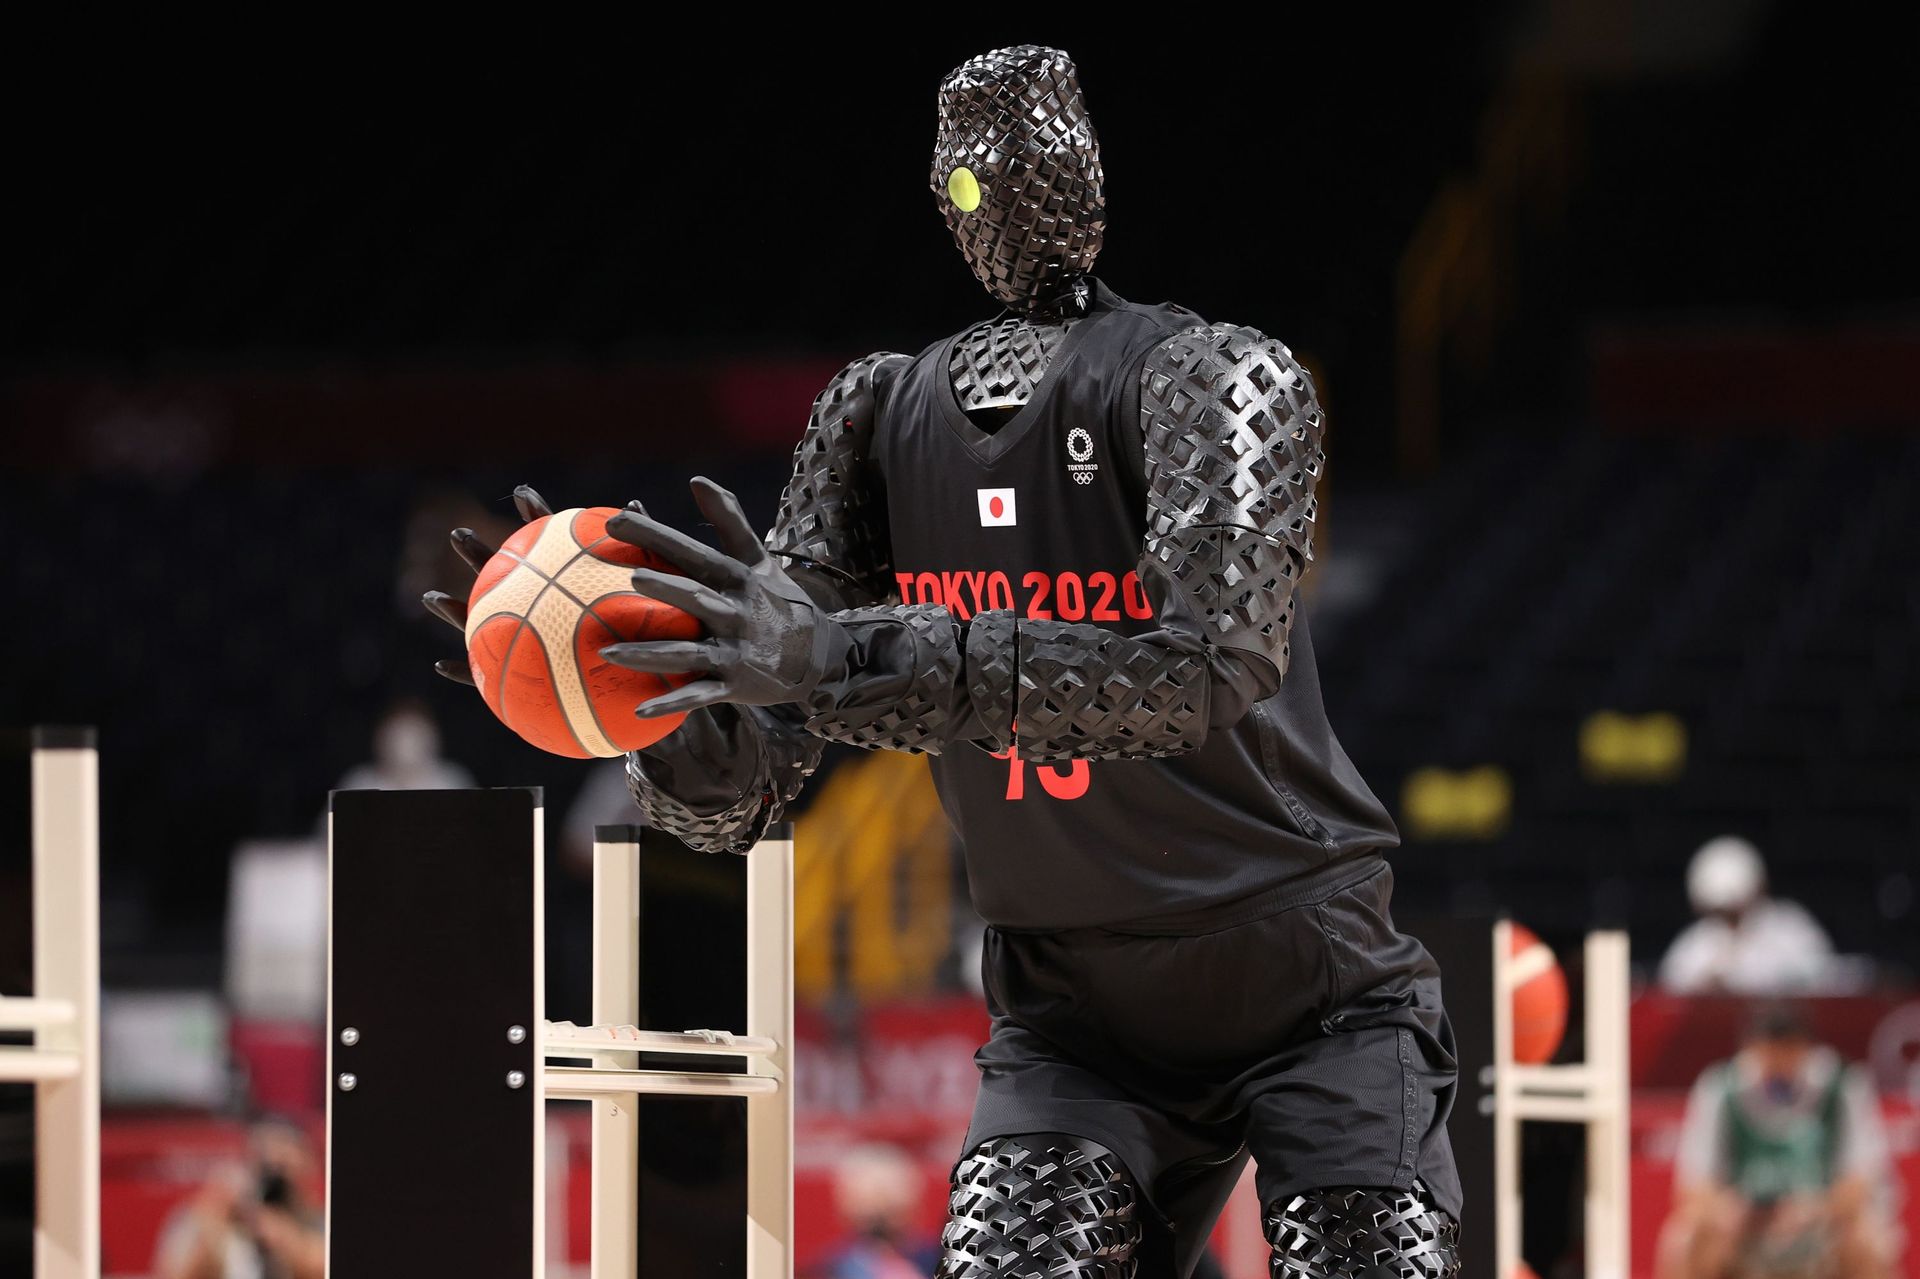 Un robot basketteur devient la vedette d'un match aux Jeux de Tokyo